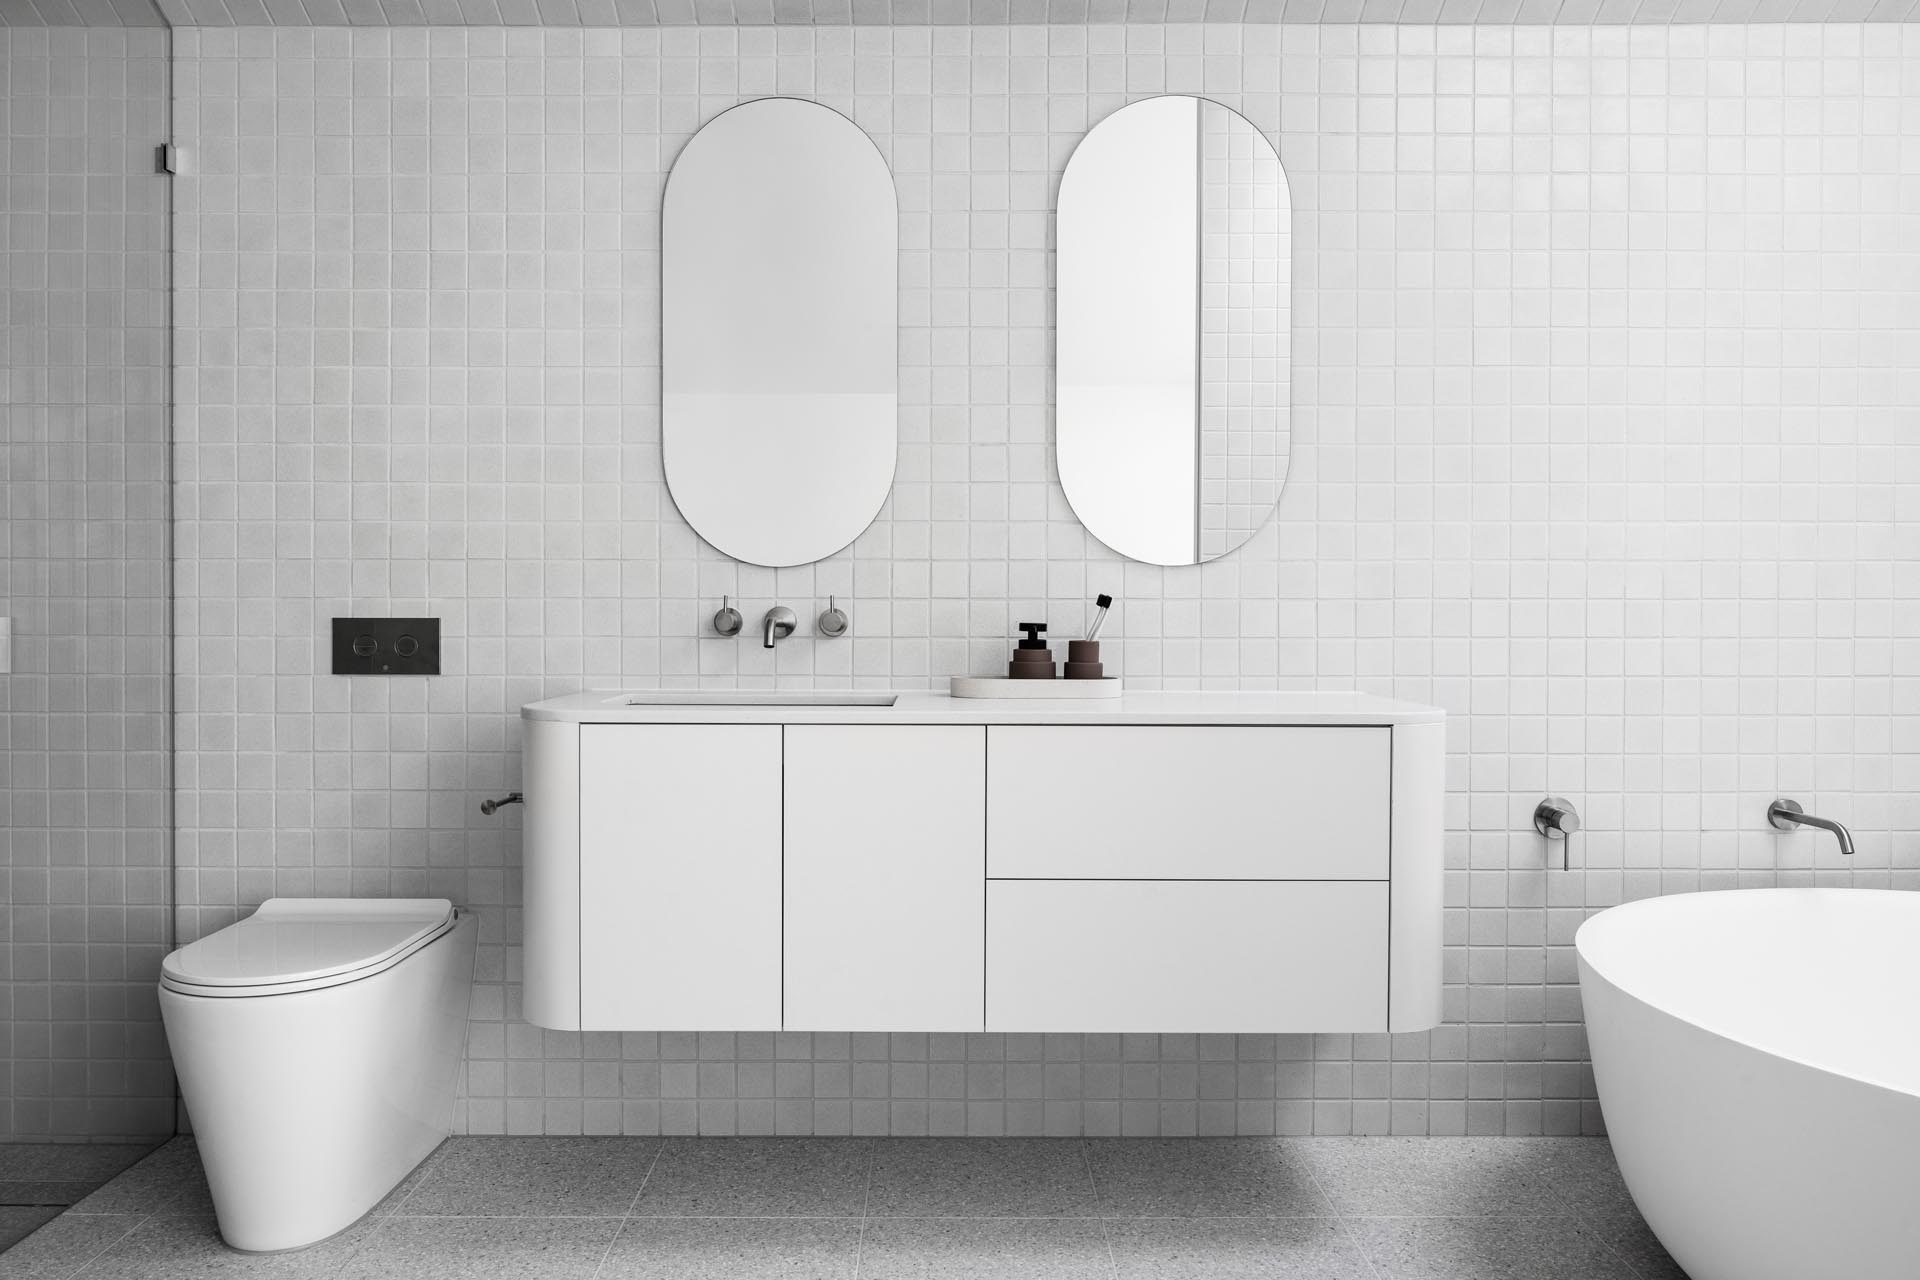 В этой современной ванной комнате квадратная серая плитка покрывает стены и пол, а зеркала в форме пилюль висят над плавающим белым туалетным столиком с изогнутыми углами. Один конец ванной комнаты отведен под душ, а в другом - круглая отдельно стоящая ванна, расположенная под потолочным окном.